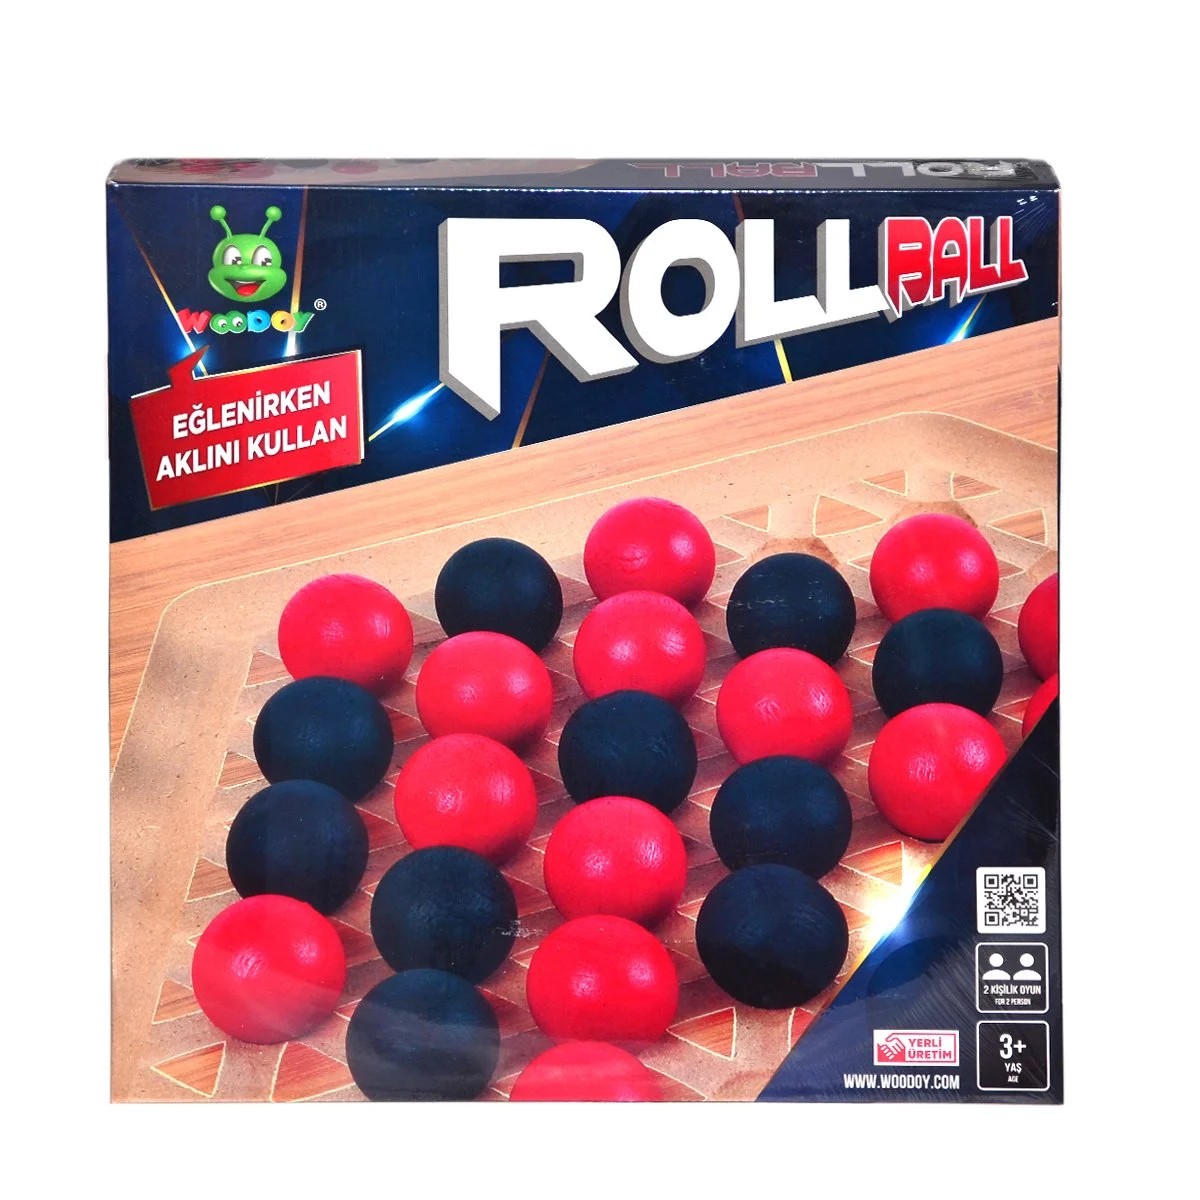 Rollball Oyunu